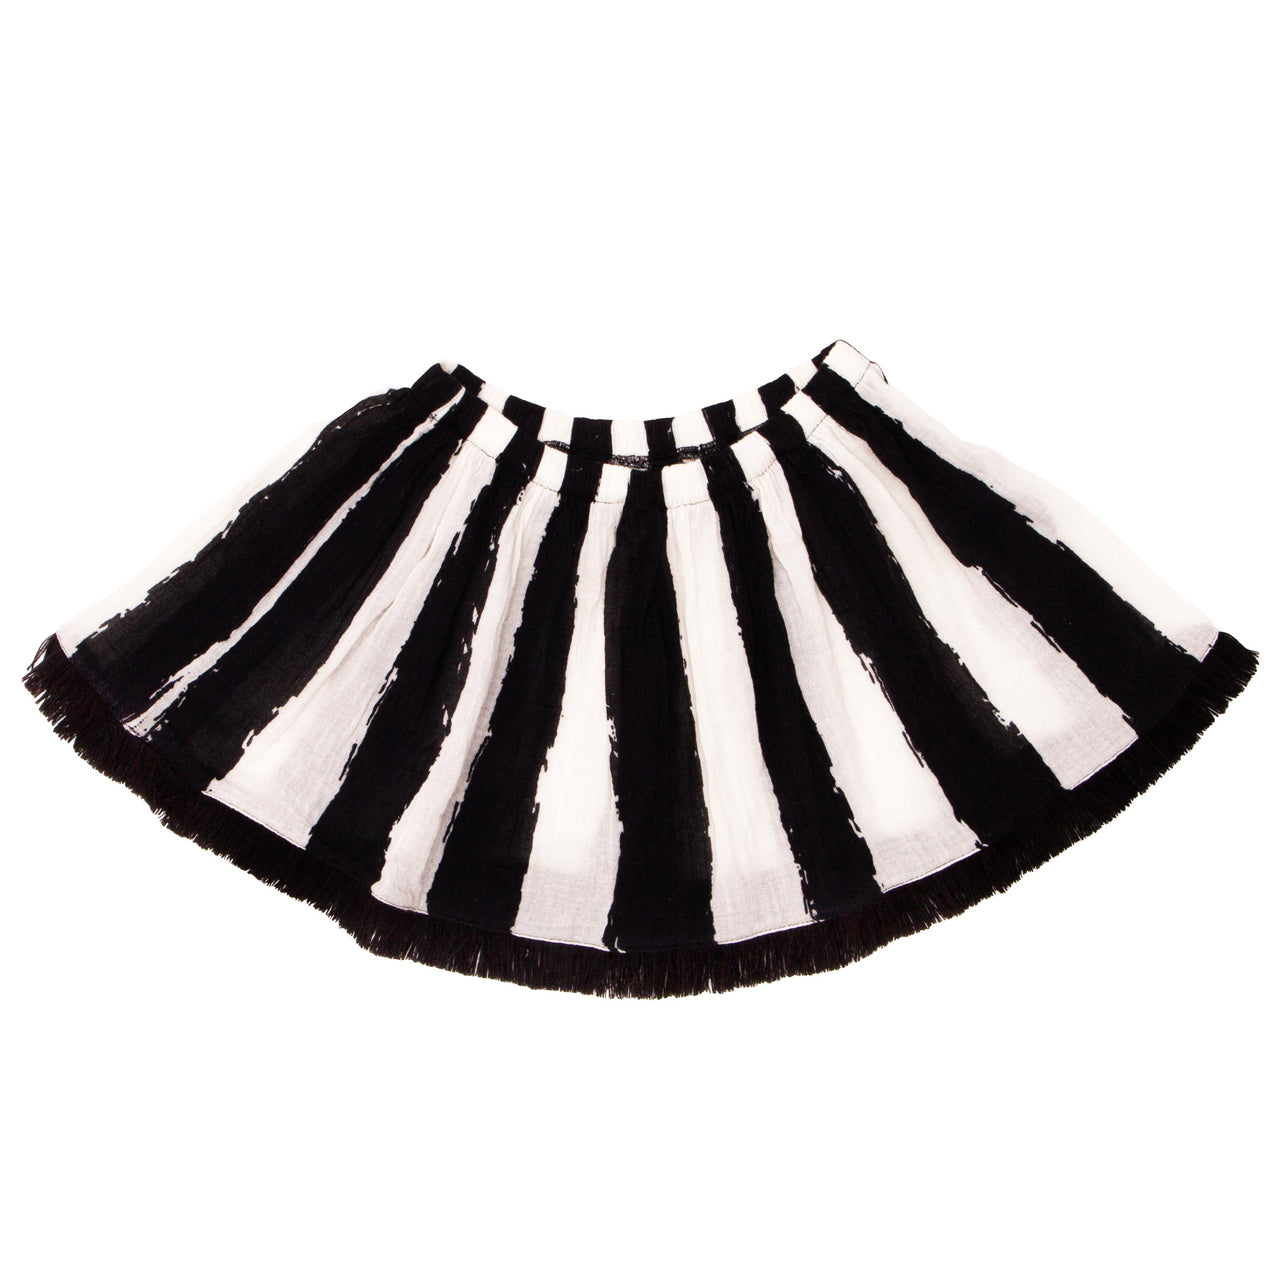 SpearmintLOVE’s baby Roller Skirt, Black Skirt